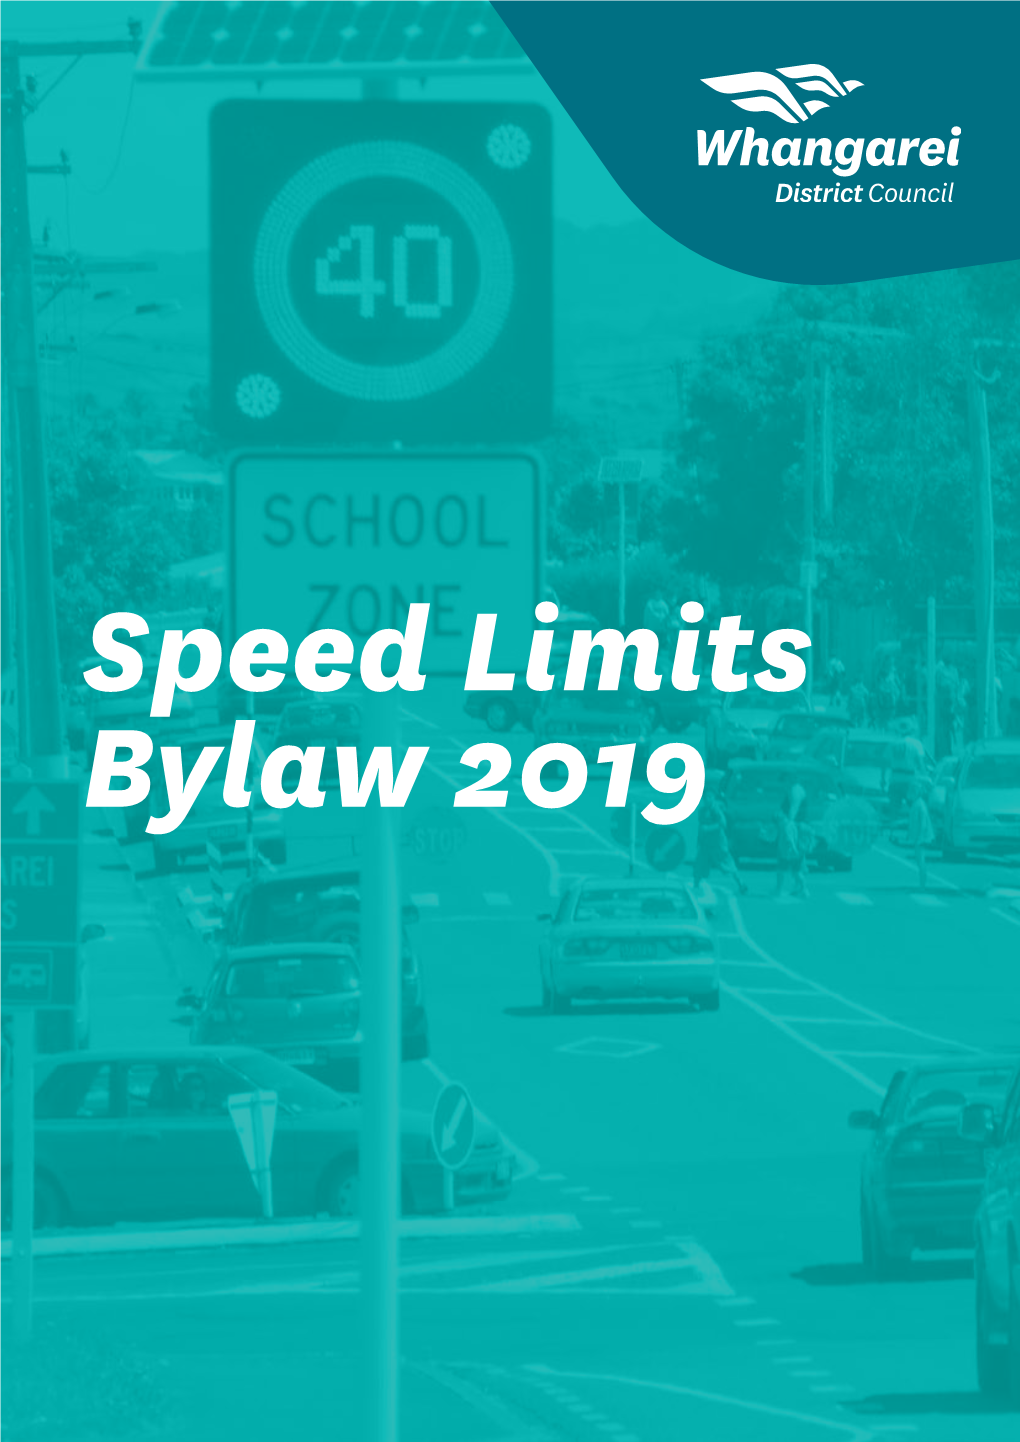 Amendments to Speed Limits Bylaw 2019